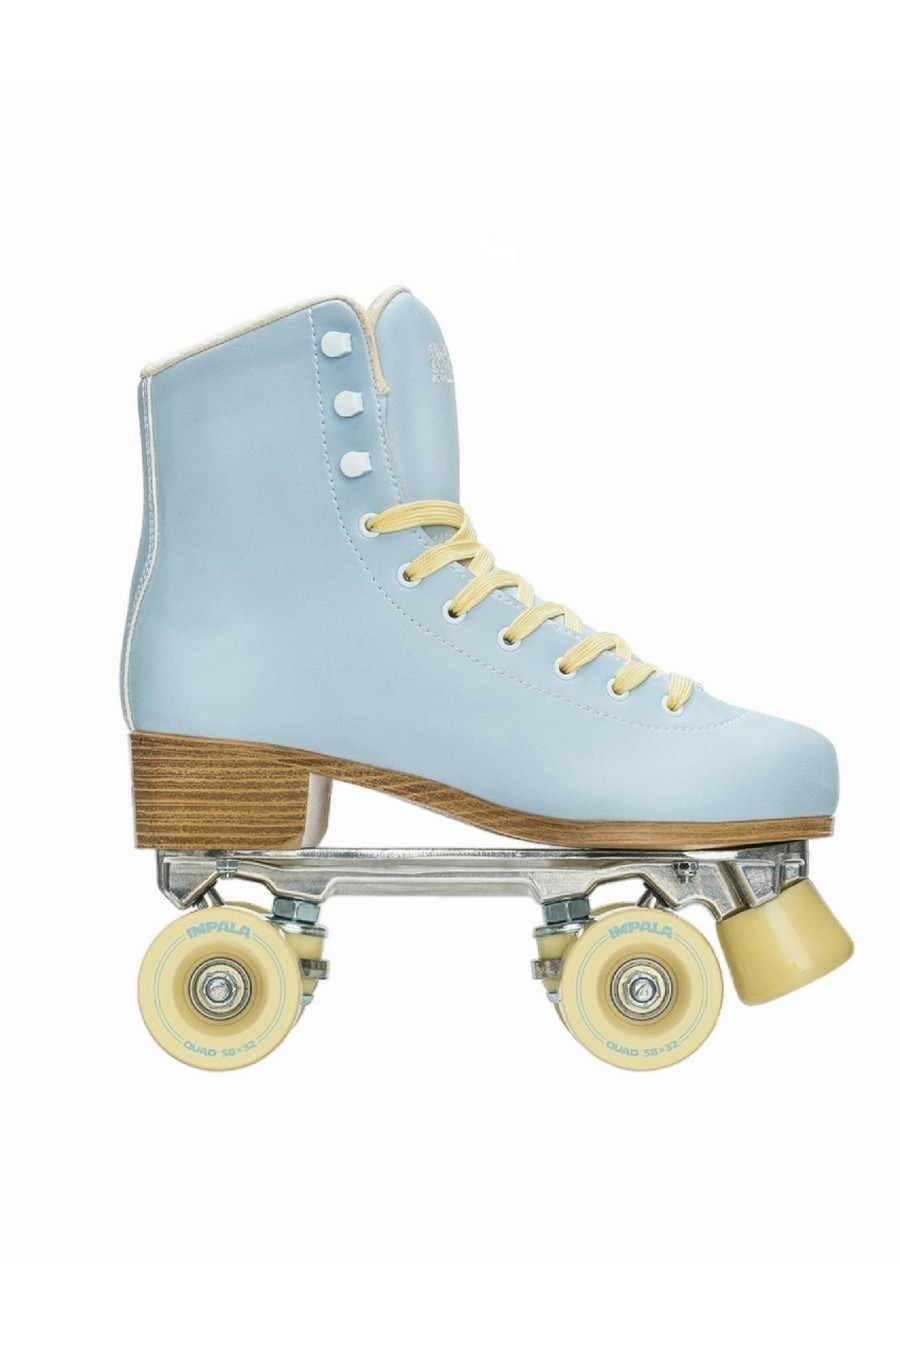 IMPALA In Line Skates QUAD SKATES SKY BLUE/YELLOW - BLUE-IMP47178-122-BLUE 57924